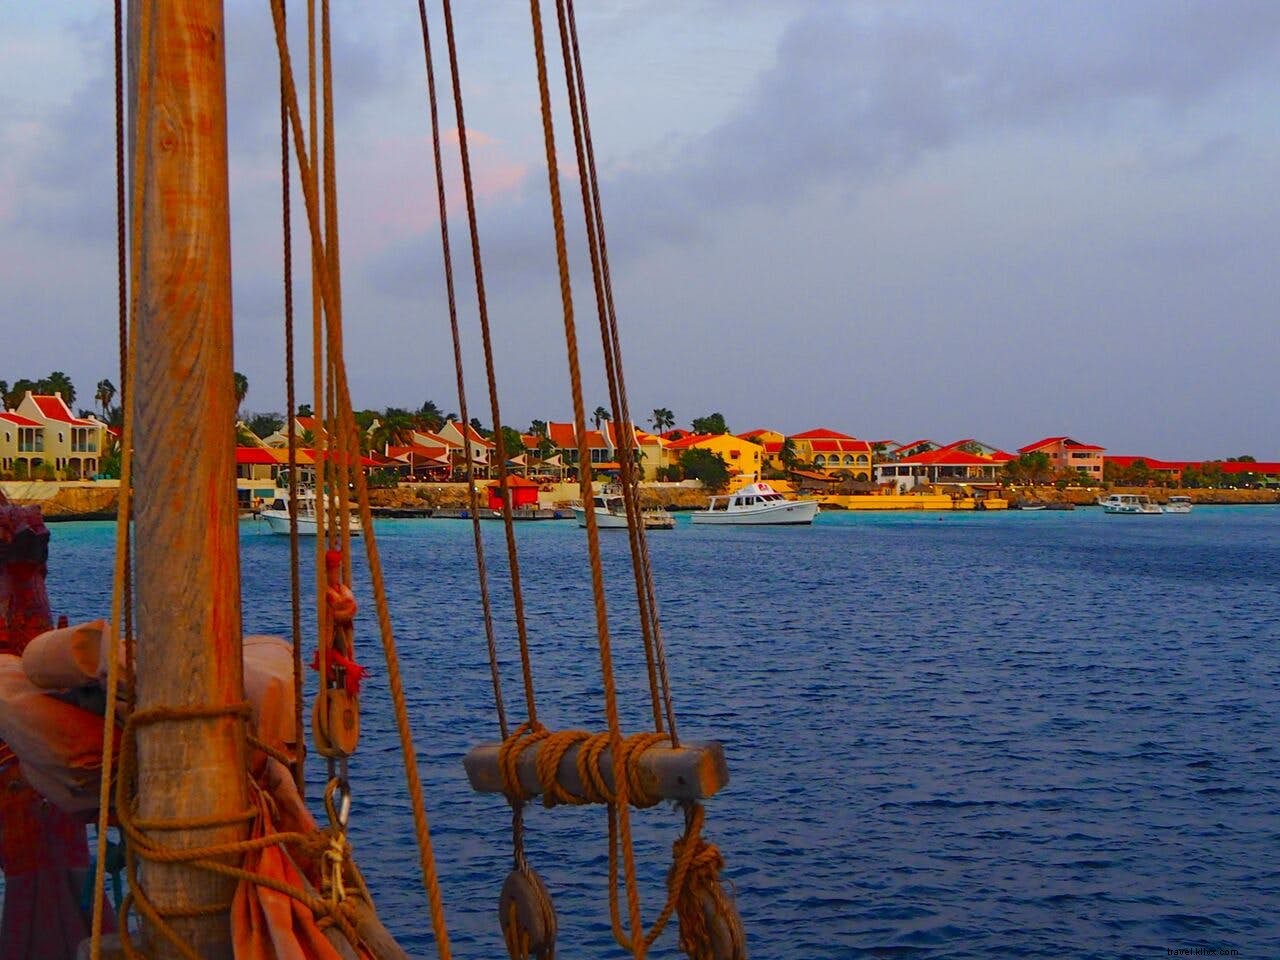 Le acque di Bonaire offrono tanto divertimento in famiglia 